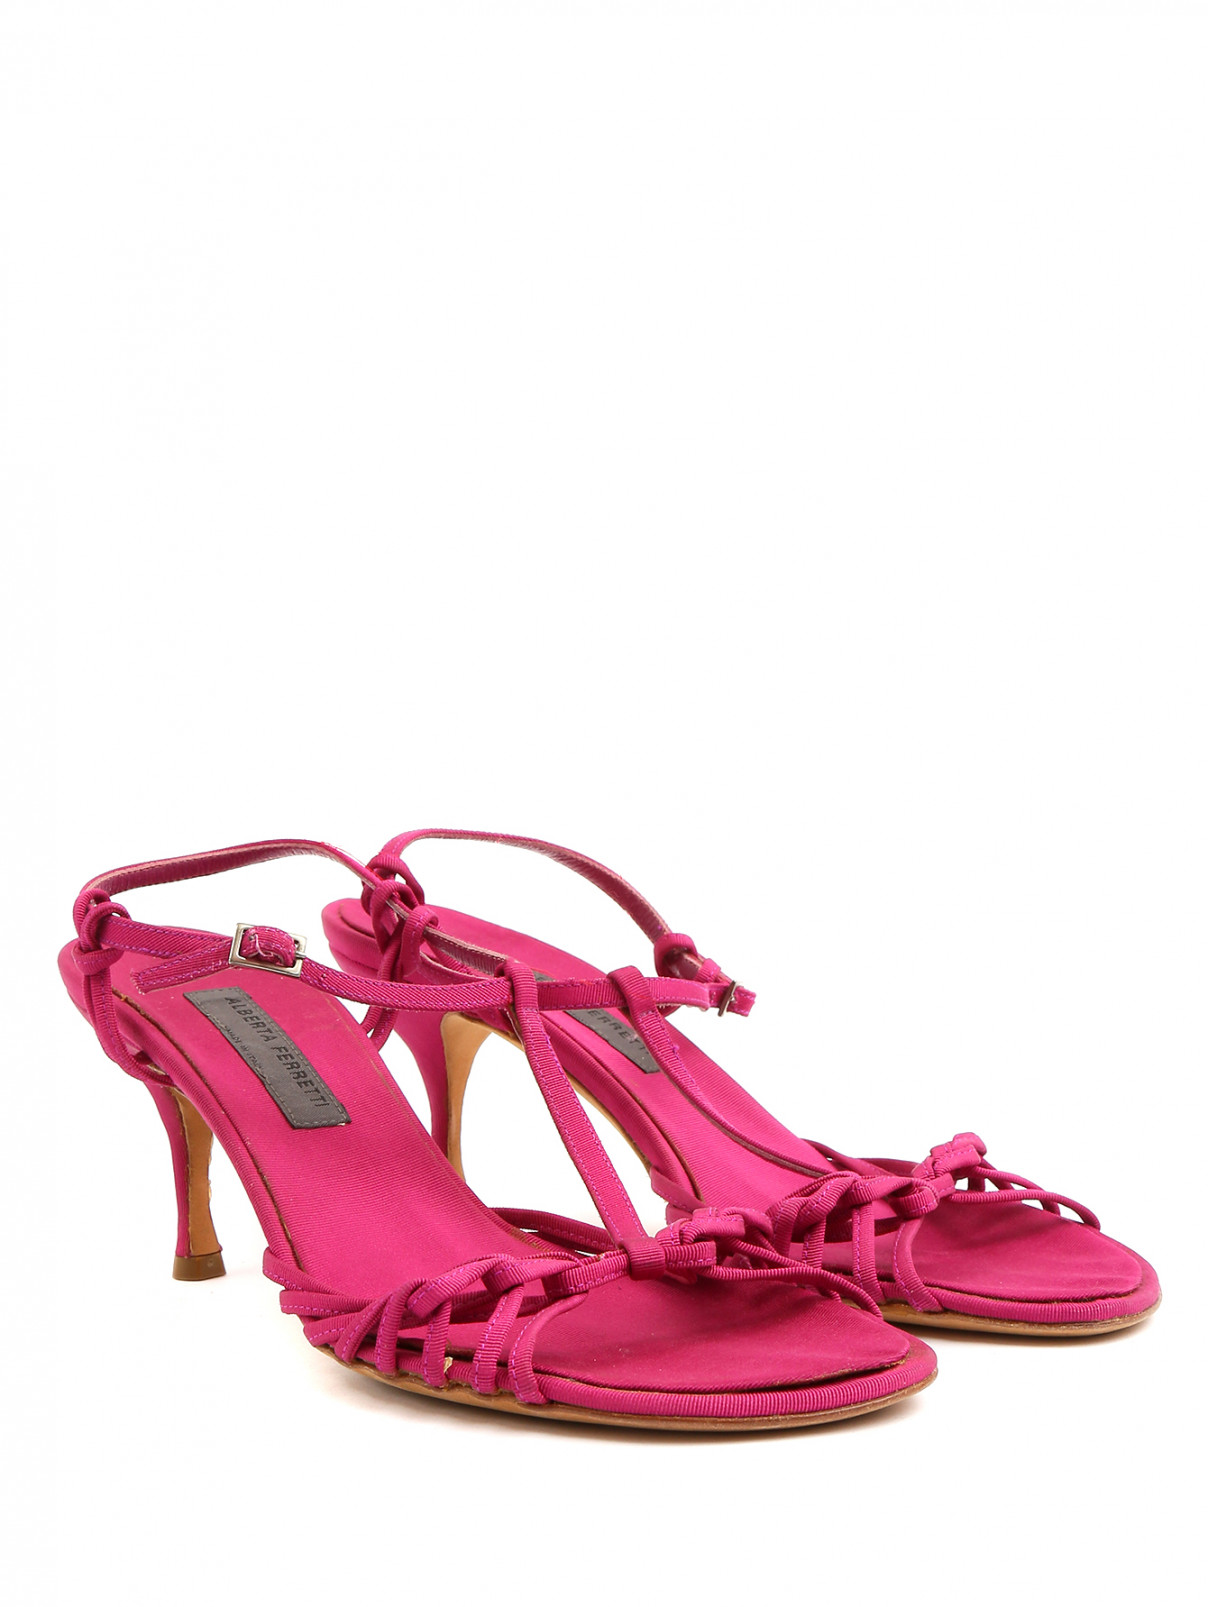 Босоножки на среднем каблуке с плетением Alberta Ferretti  –  Общий вид  – Цвет:  Розовый